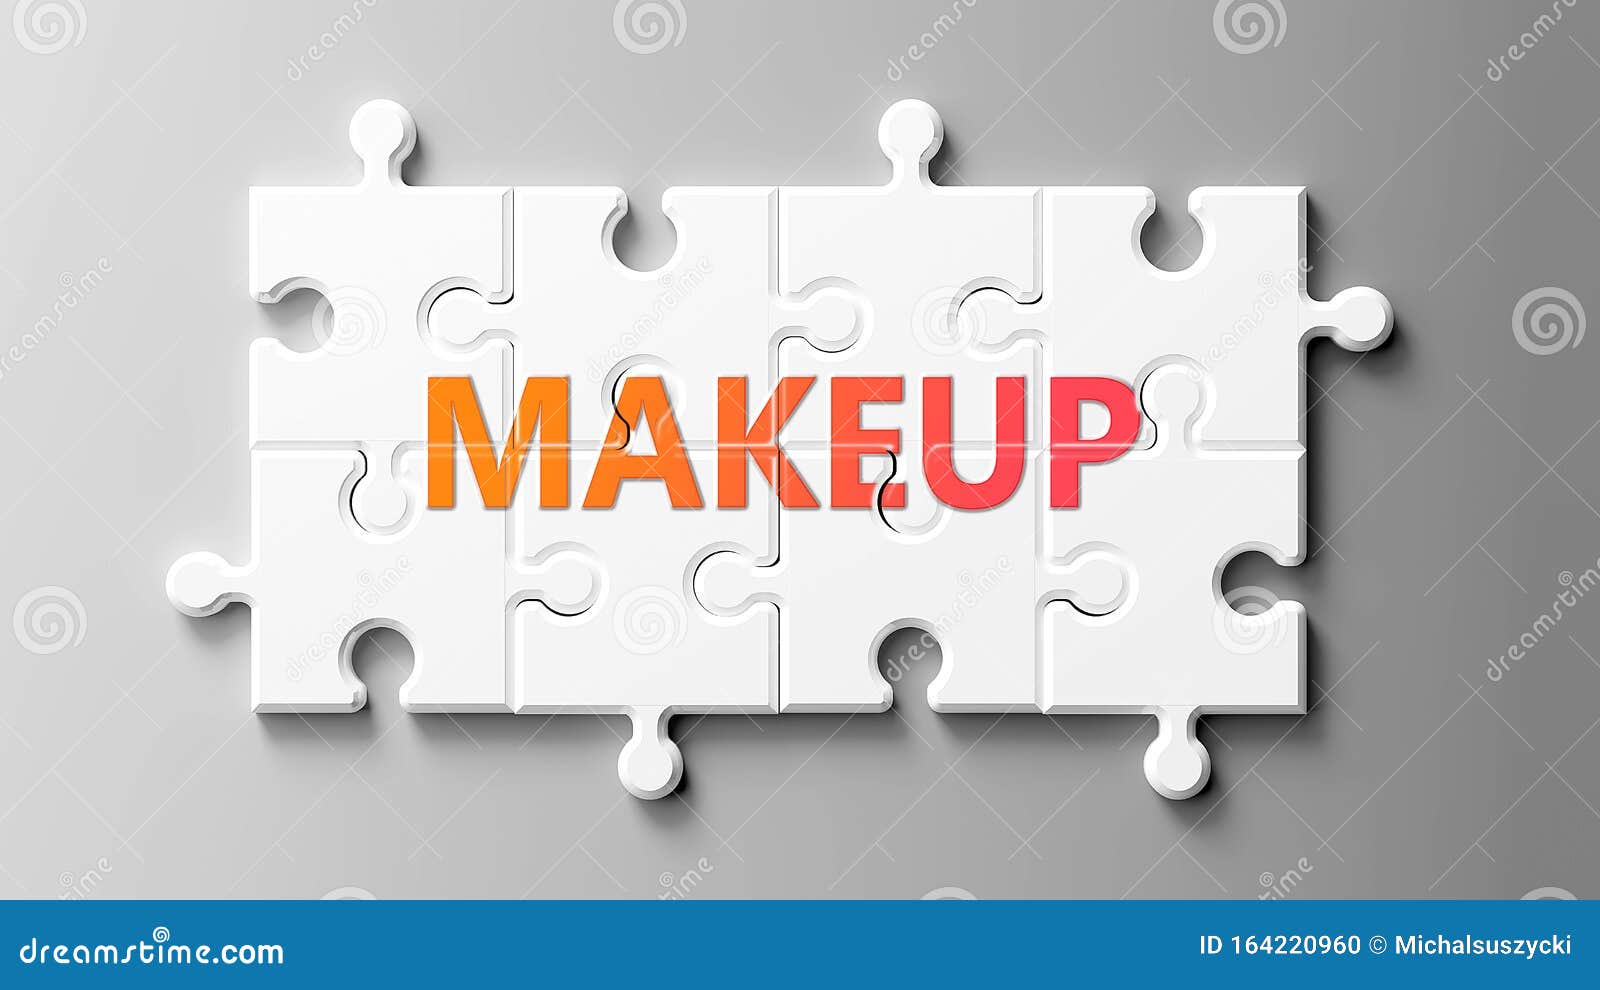 Maquillaje Complejo Como Un Puzzle - Retratado Como Palabra Maquillaje En  Piezas De Rompecabezas Para Mostrar Que El Maquillaje P Stock de  ilustración - Ilustración de extracto, cartel: 164220960